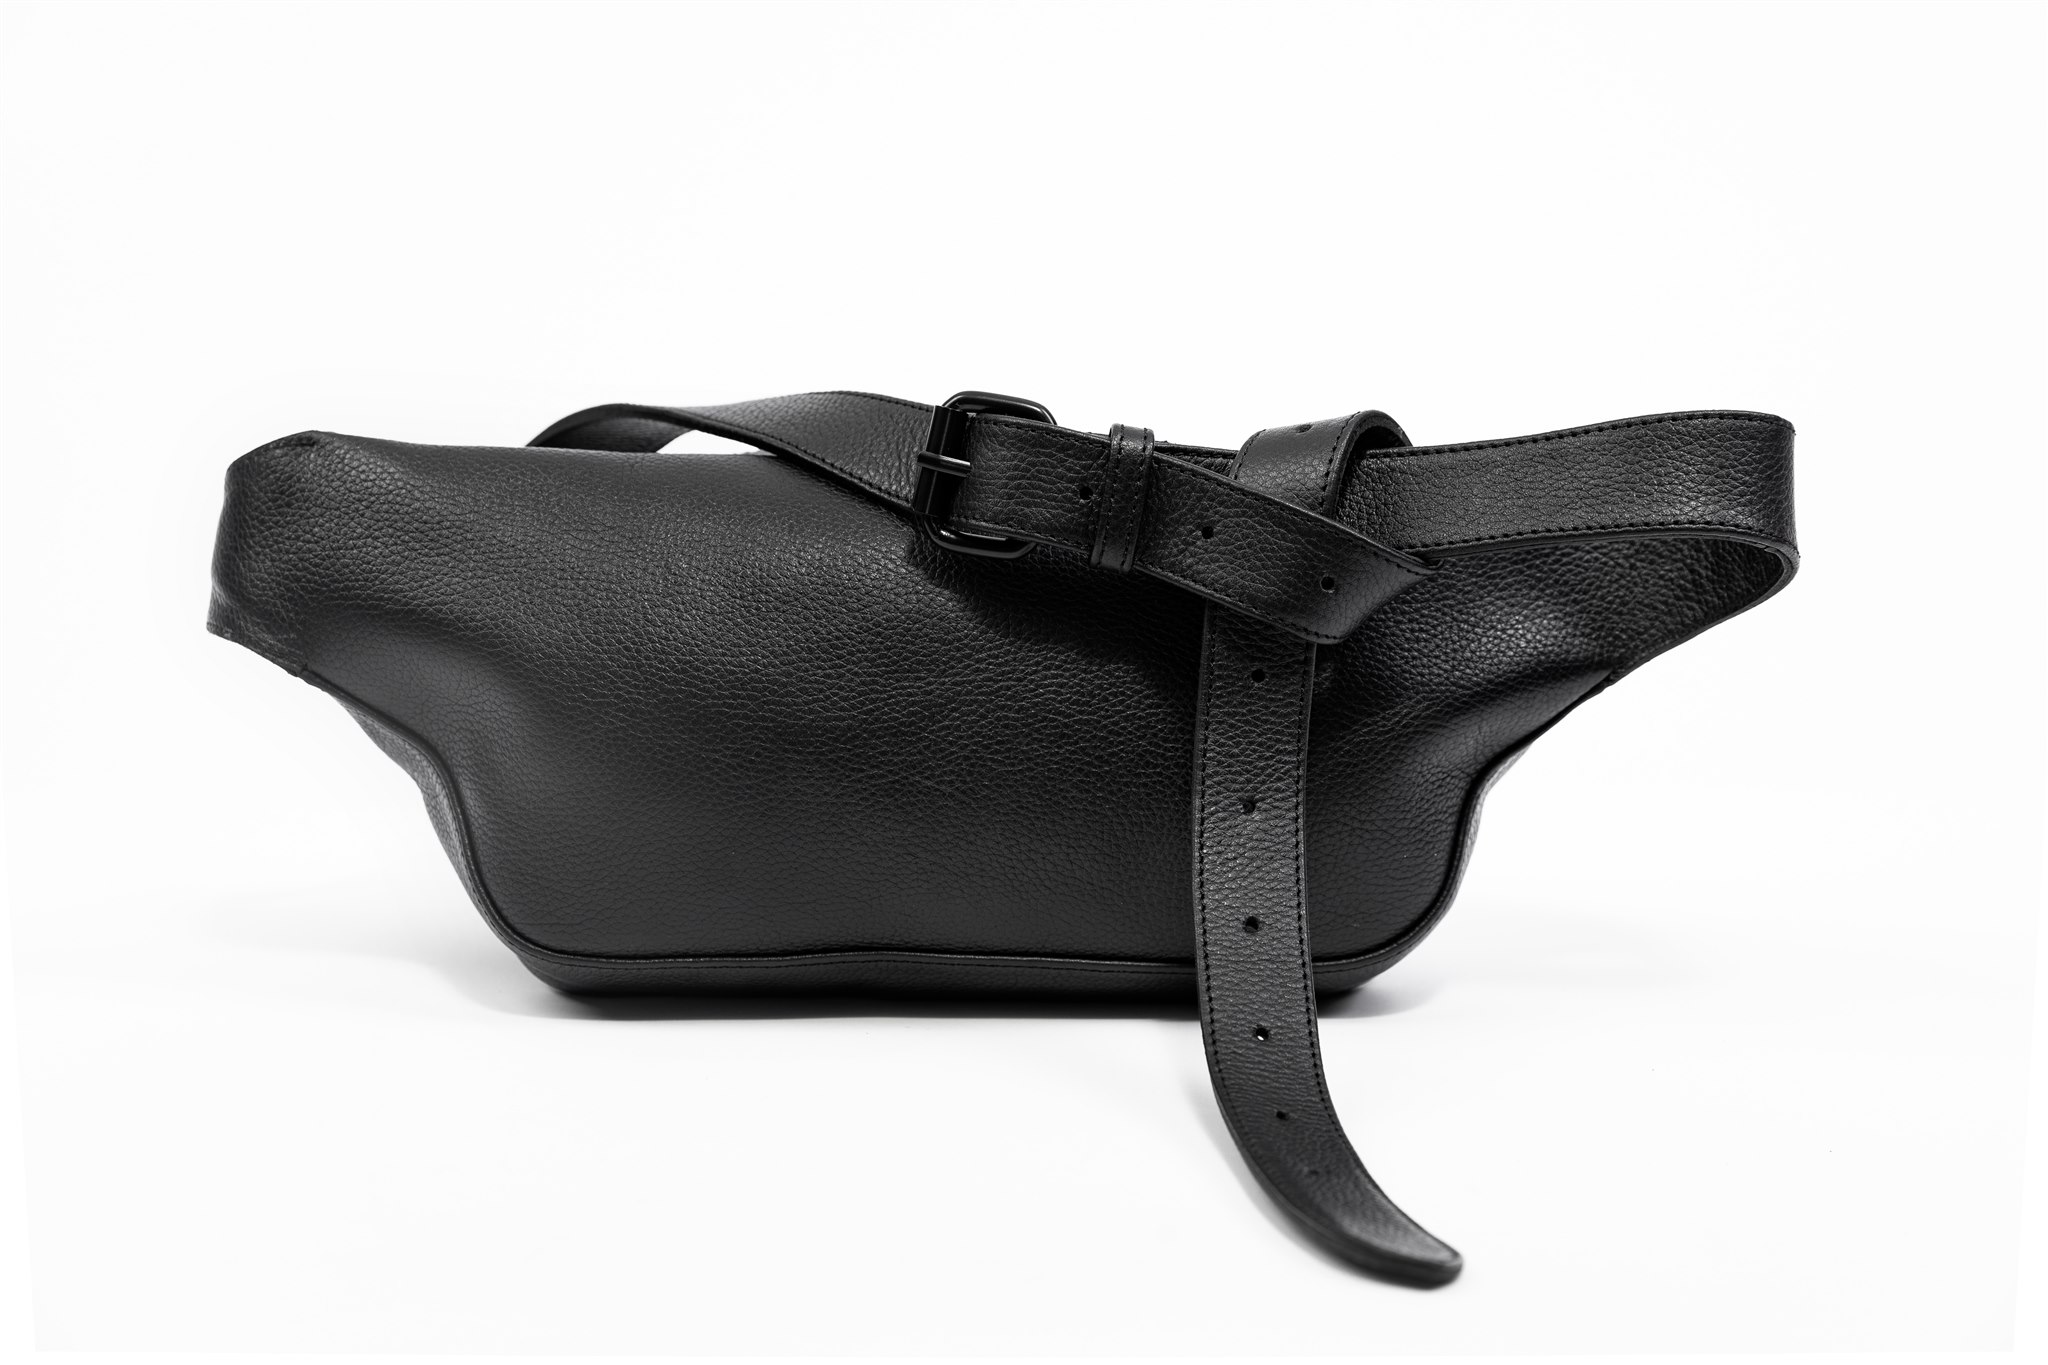 Leather belt bag "ENNO" by June9Concept